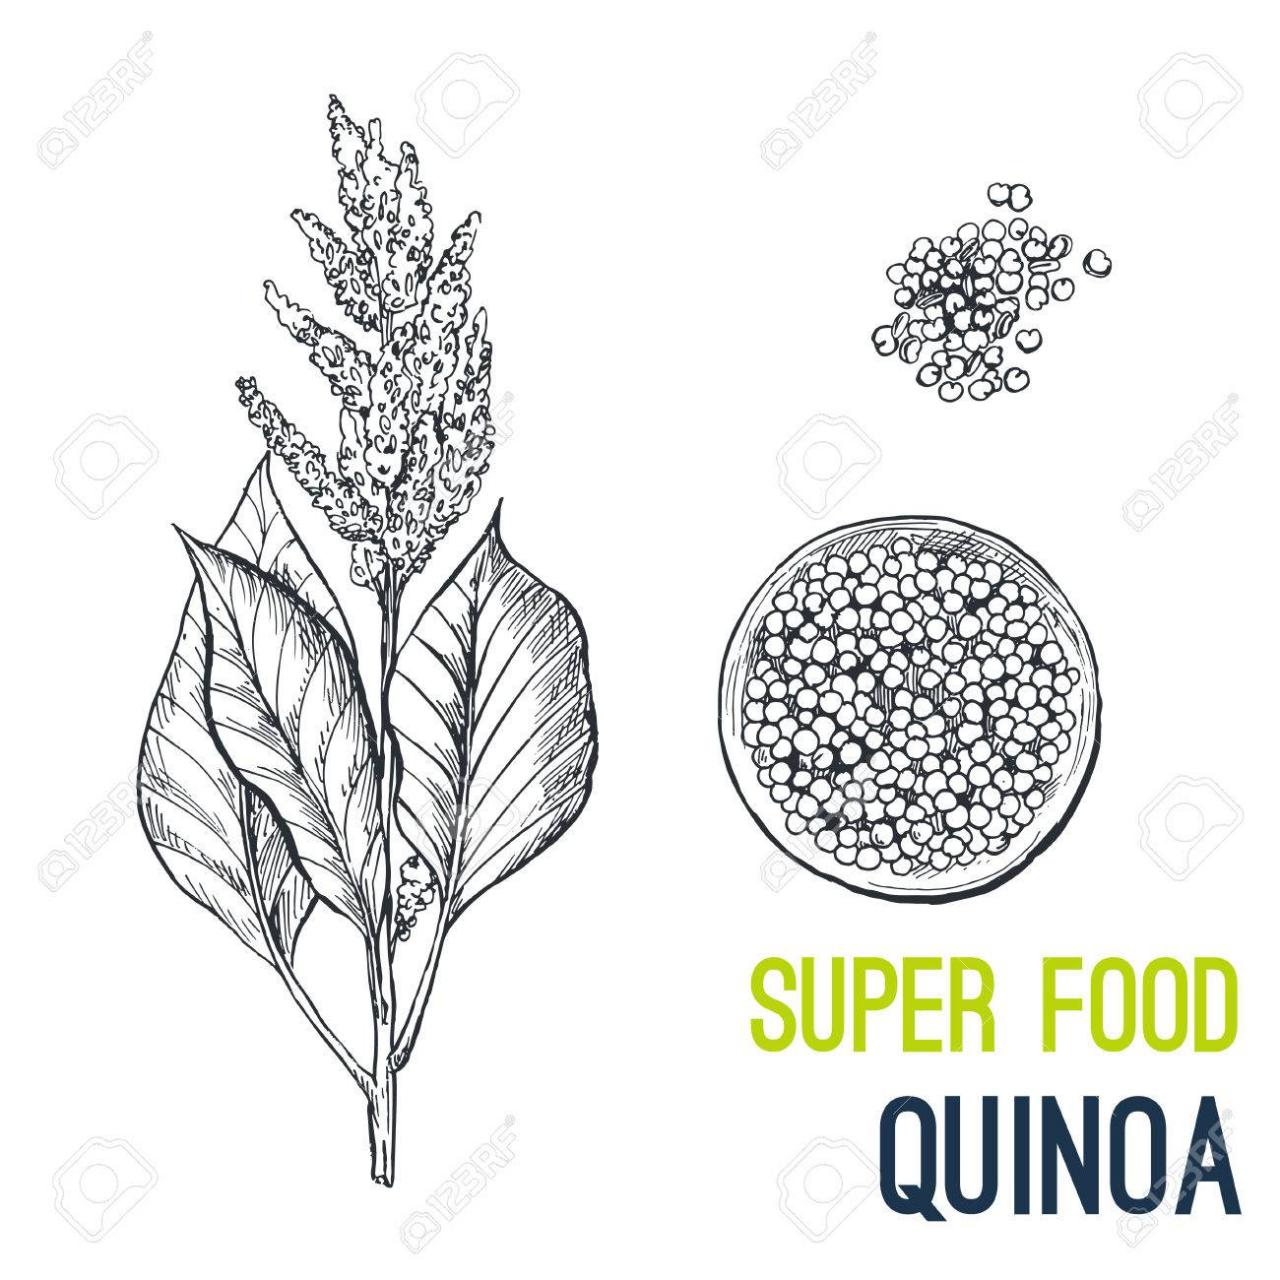 Quinoa -  Súper comida dibujado a mano dibujo ilustración vectorial -, dibujos de Quinua, como dibujar Quinua paso a paso